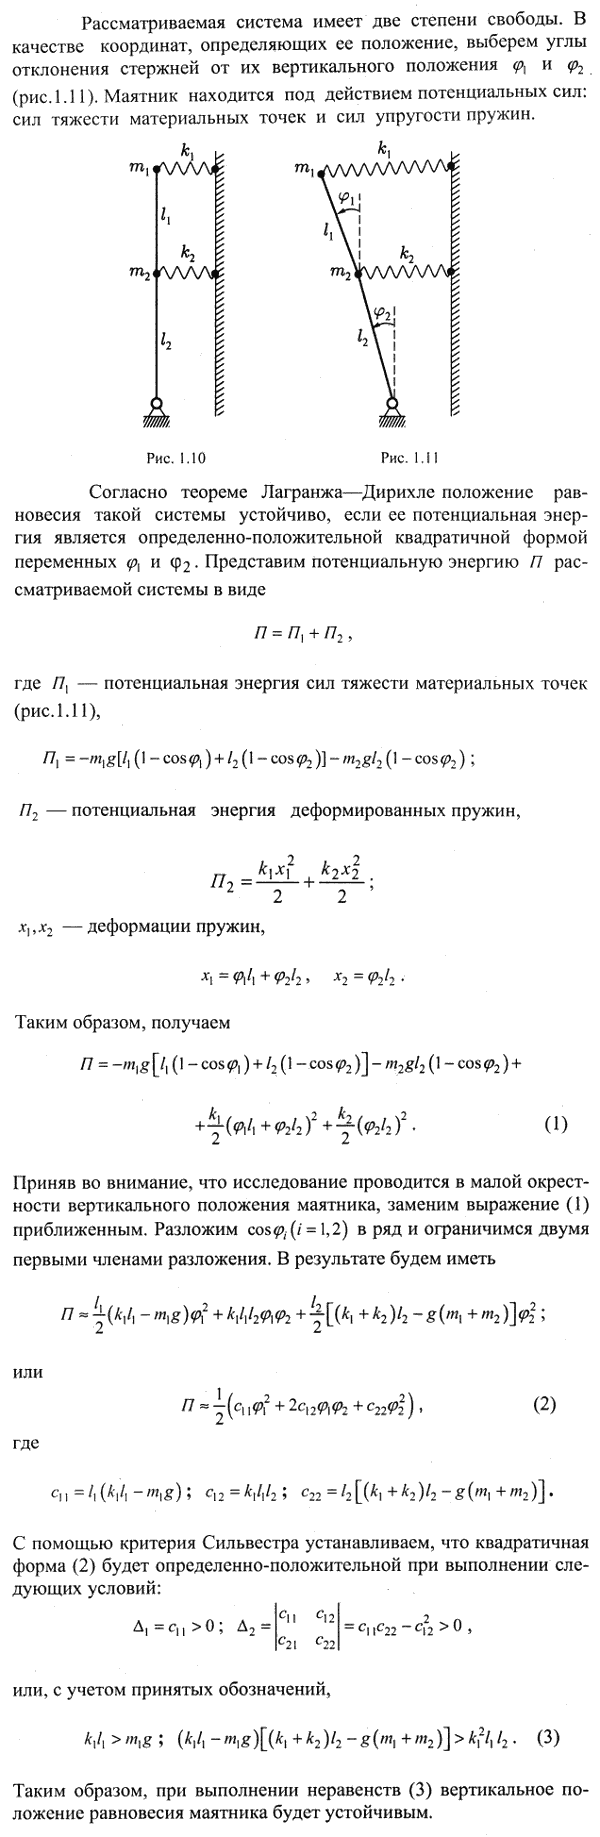 Исследовать устойчивость вертикального положения равновесия обращенного двойного маятника, изображенно..., Задача 4153, Теоретическая механика